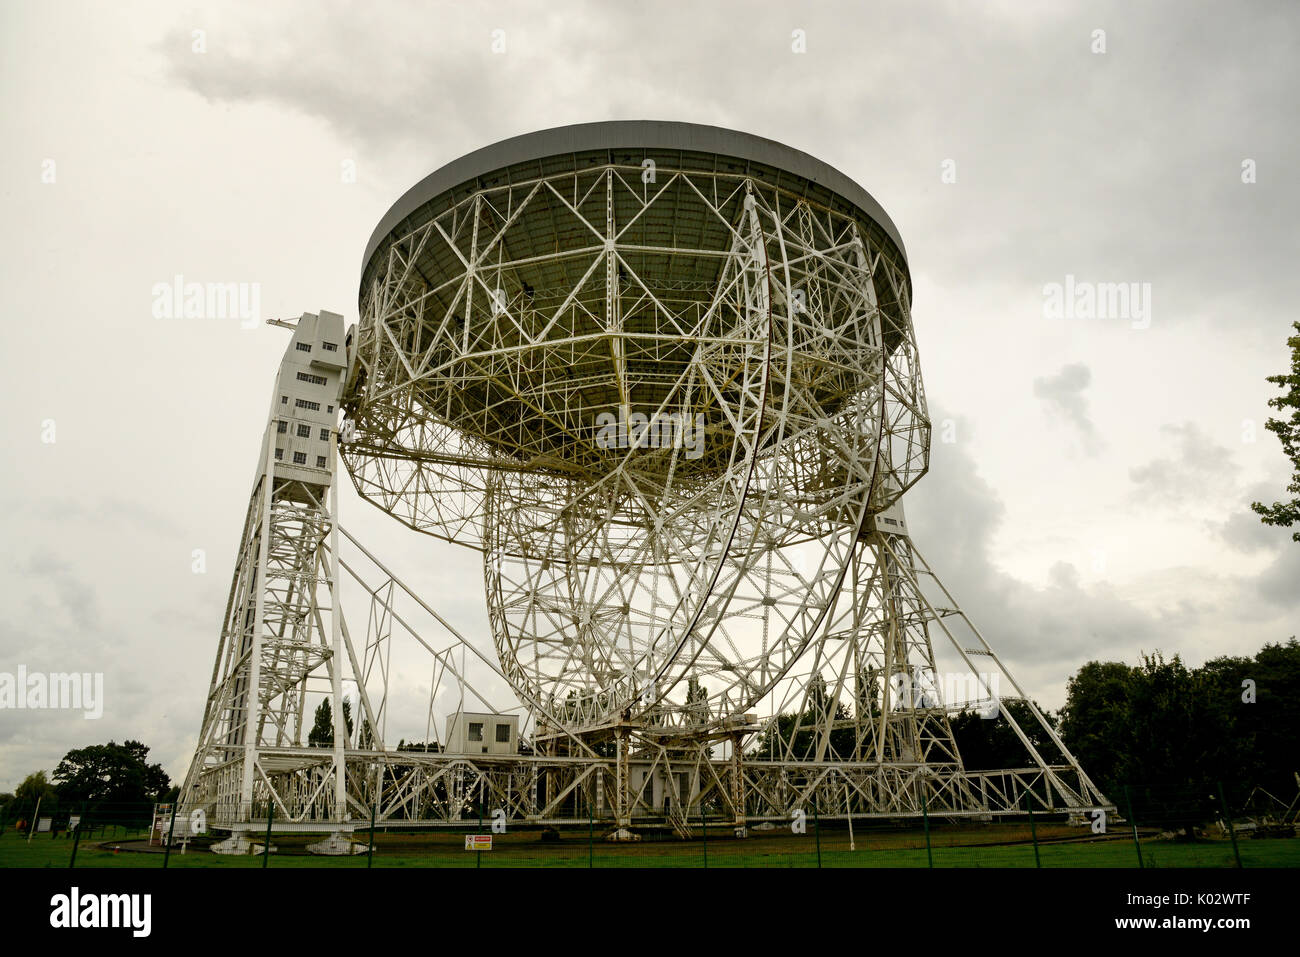 Le radiotélescope de l'observatoire de Jodrell Bank dans le Cheshire, Angleterre, qui fait partie de l'astrophysique dept de l'université de Manchester. Banque D'Images